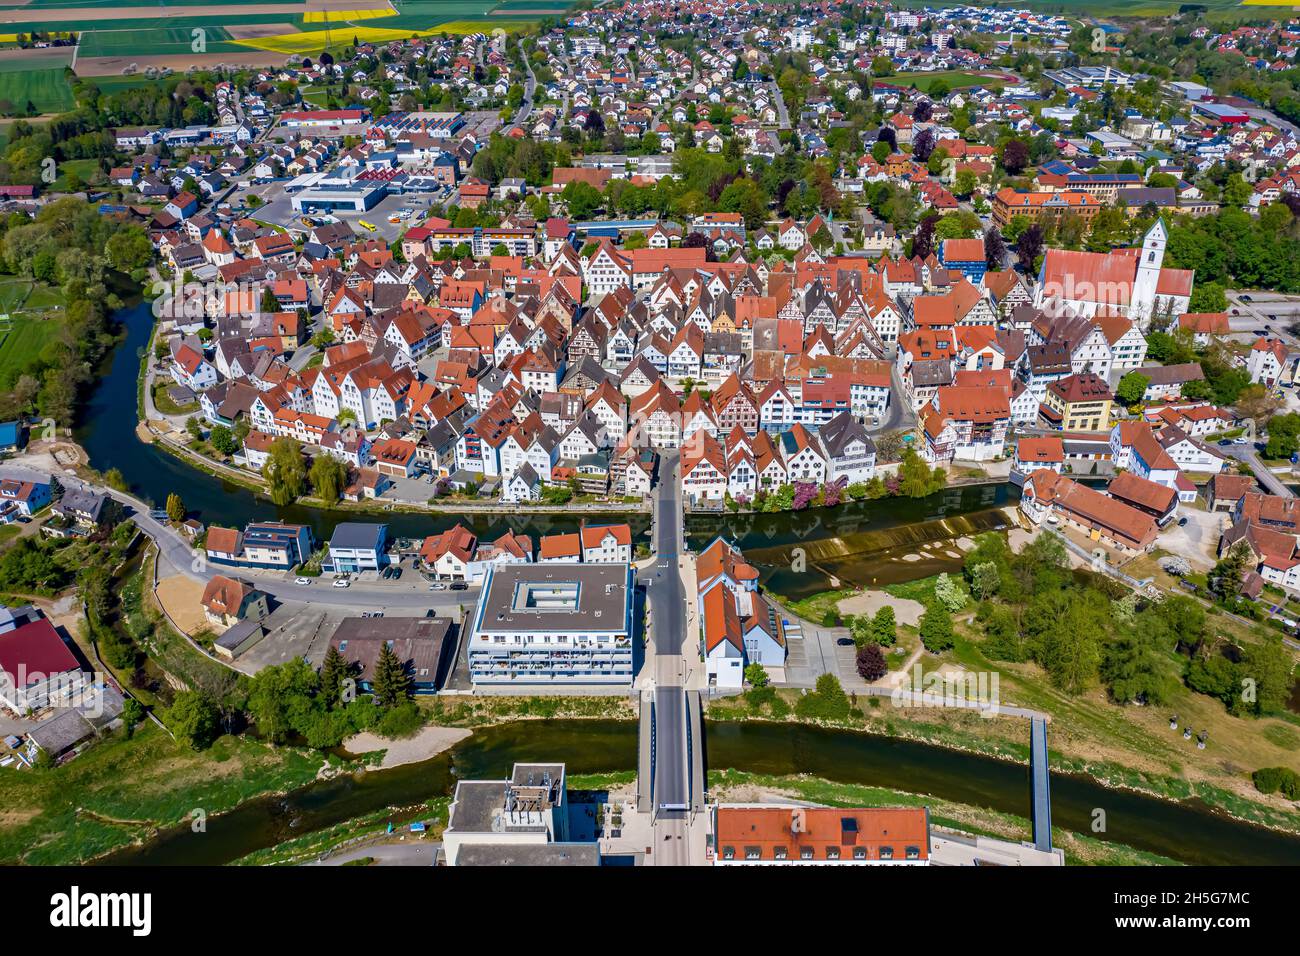 Riedlingen Luftbild | Die Stadt Riedlingen aus der Luft | vue aérienne de la ville allemande de Riedlingen Banque D'Images